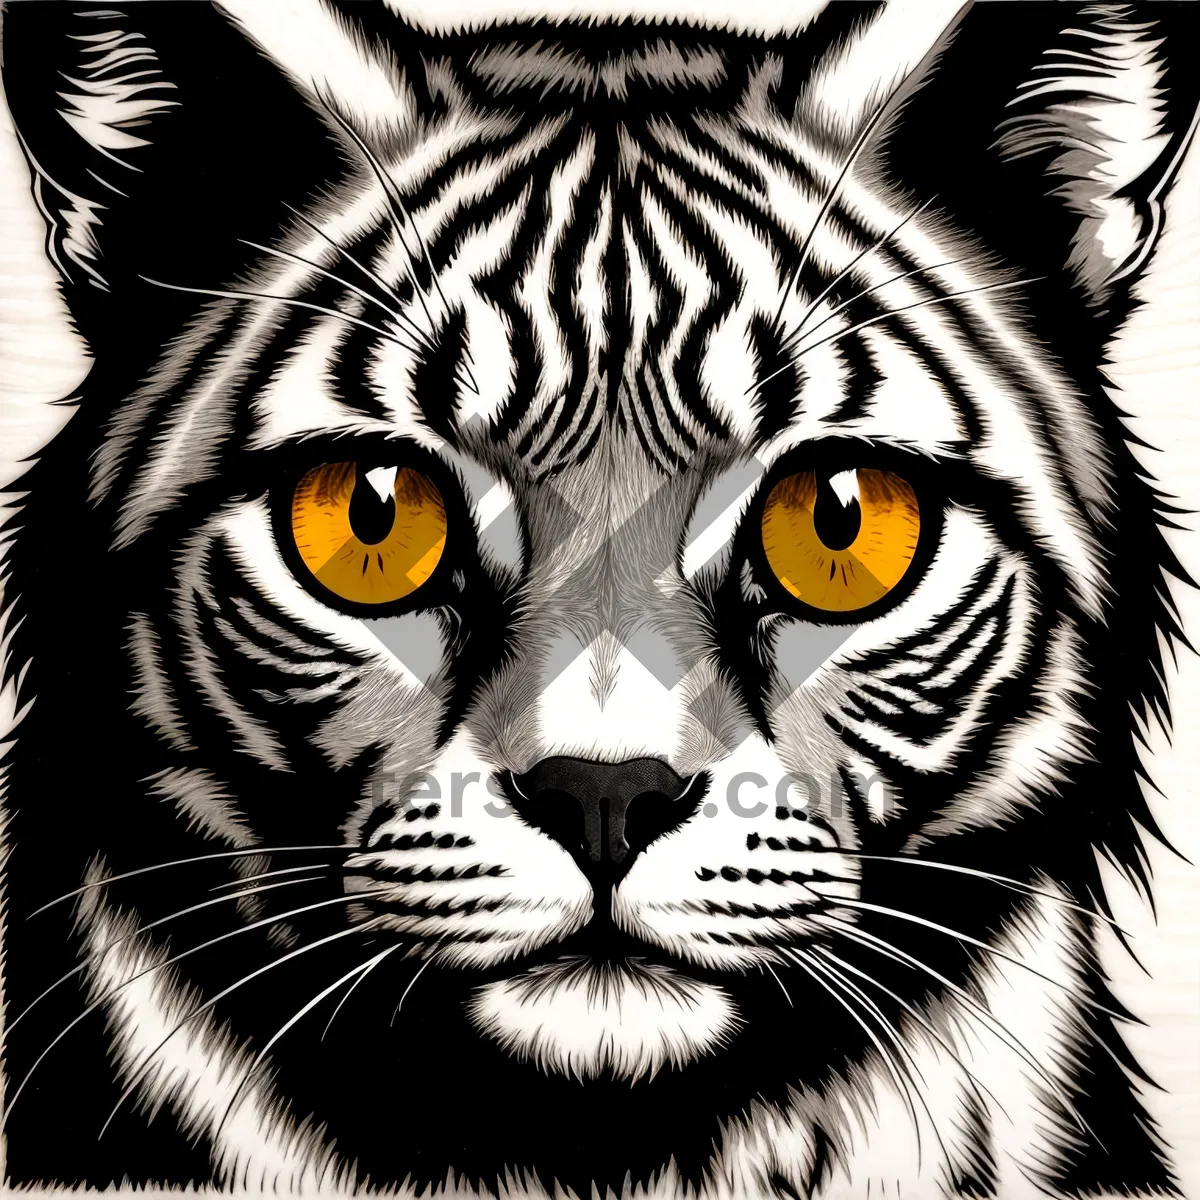 Picture of Fierce Feline: Striped Predator with Piercing Eyes